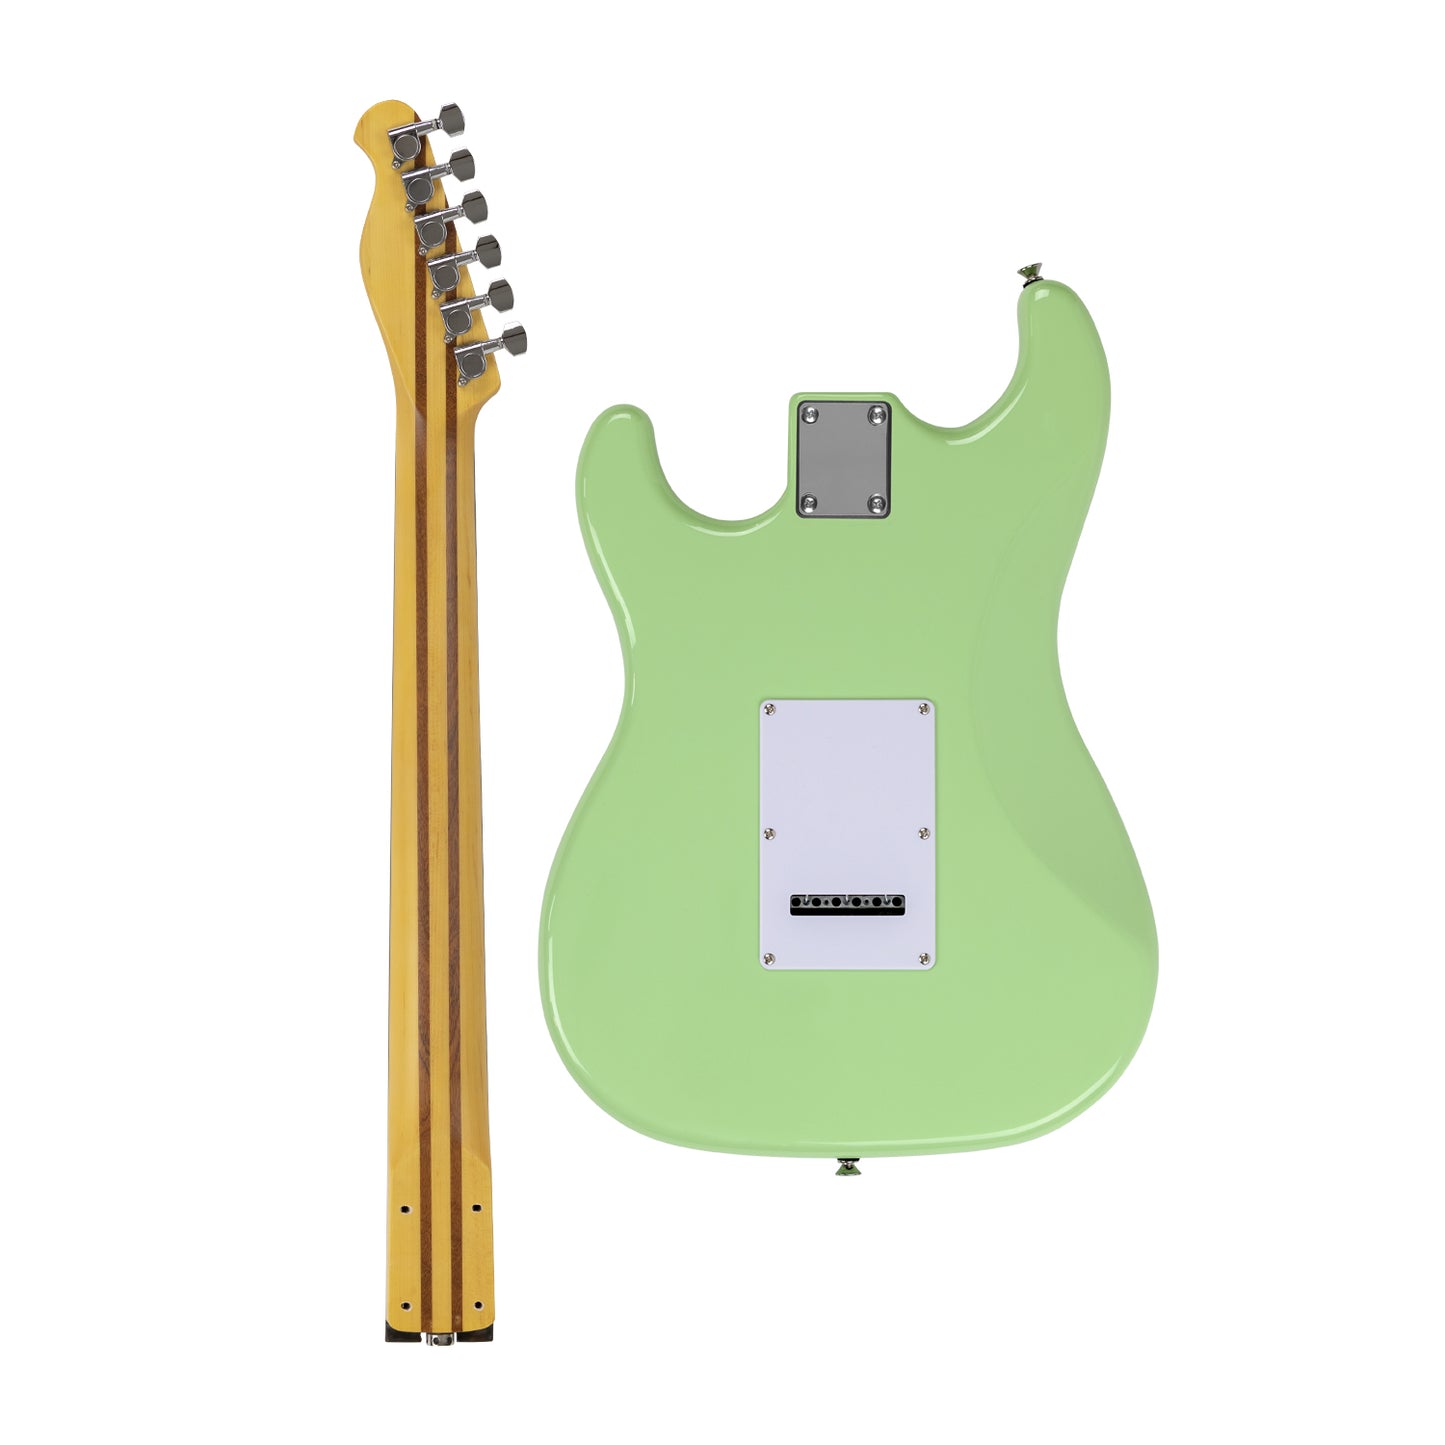 AE Guitars® Build Series Sepulveda Standard Seafoam Green (Rosewood Neck) Guitar Kit